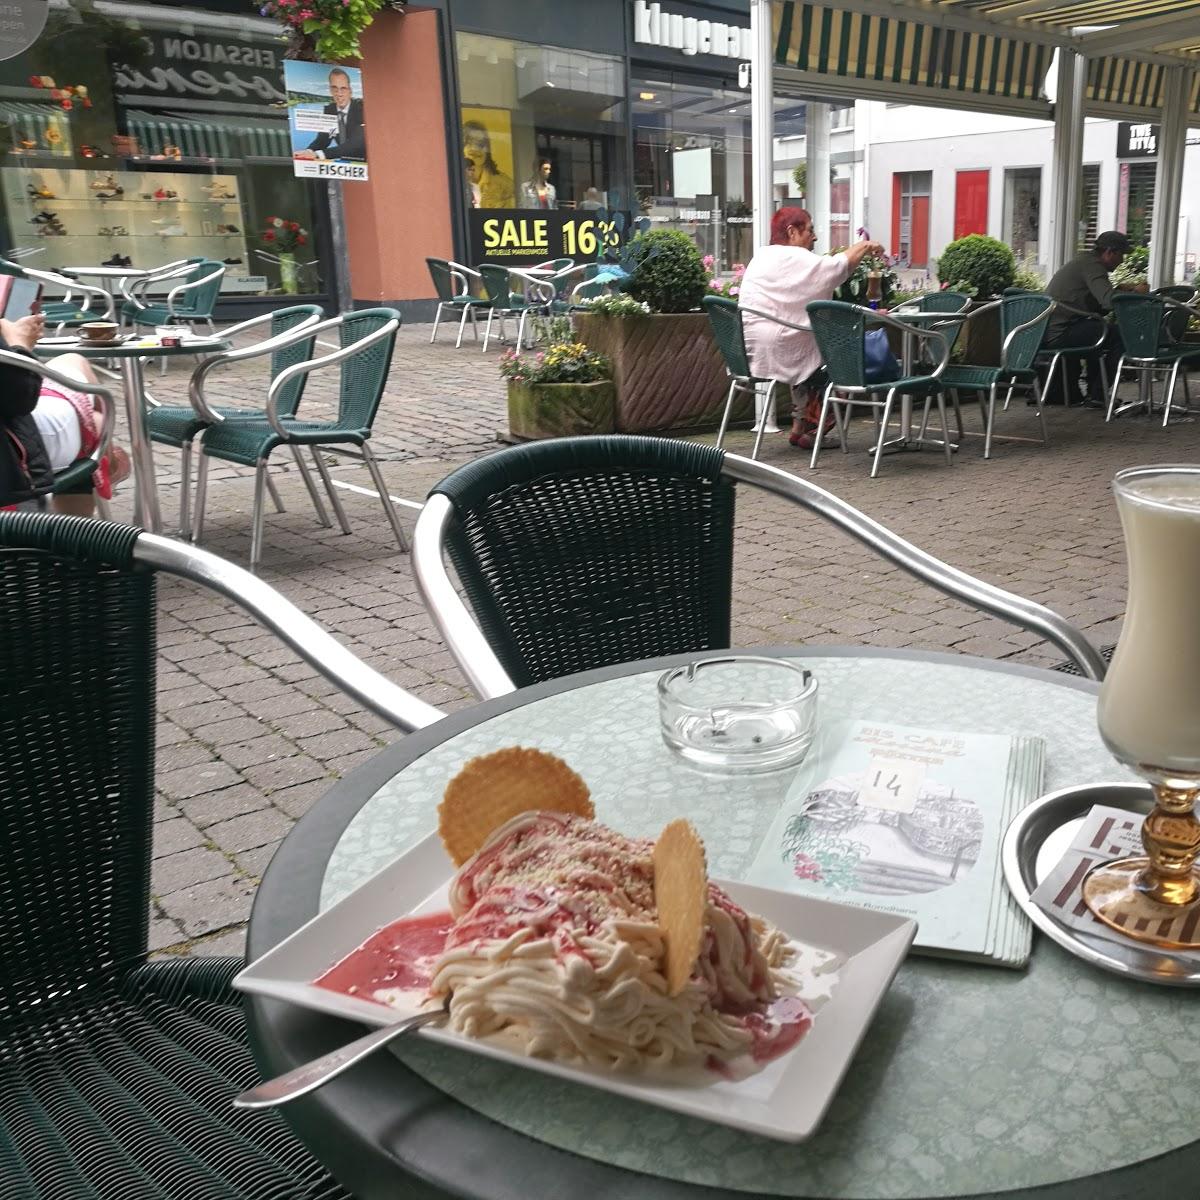 Restaurant "Eiscafé Mosena" in Höxter